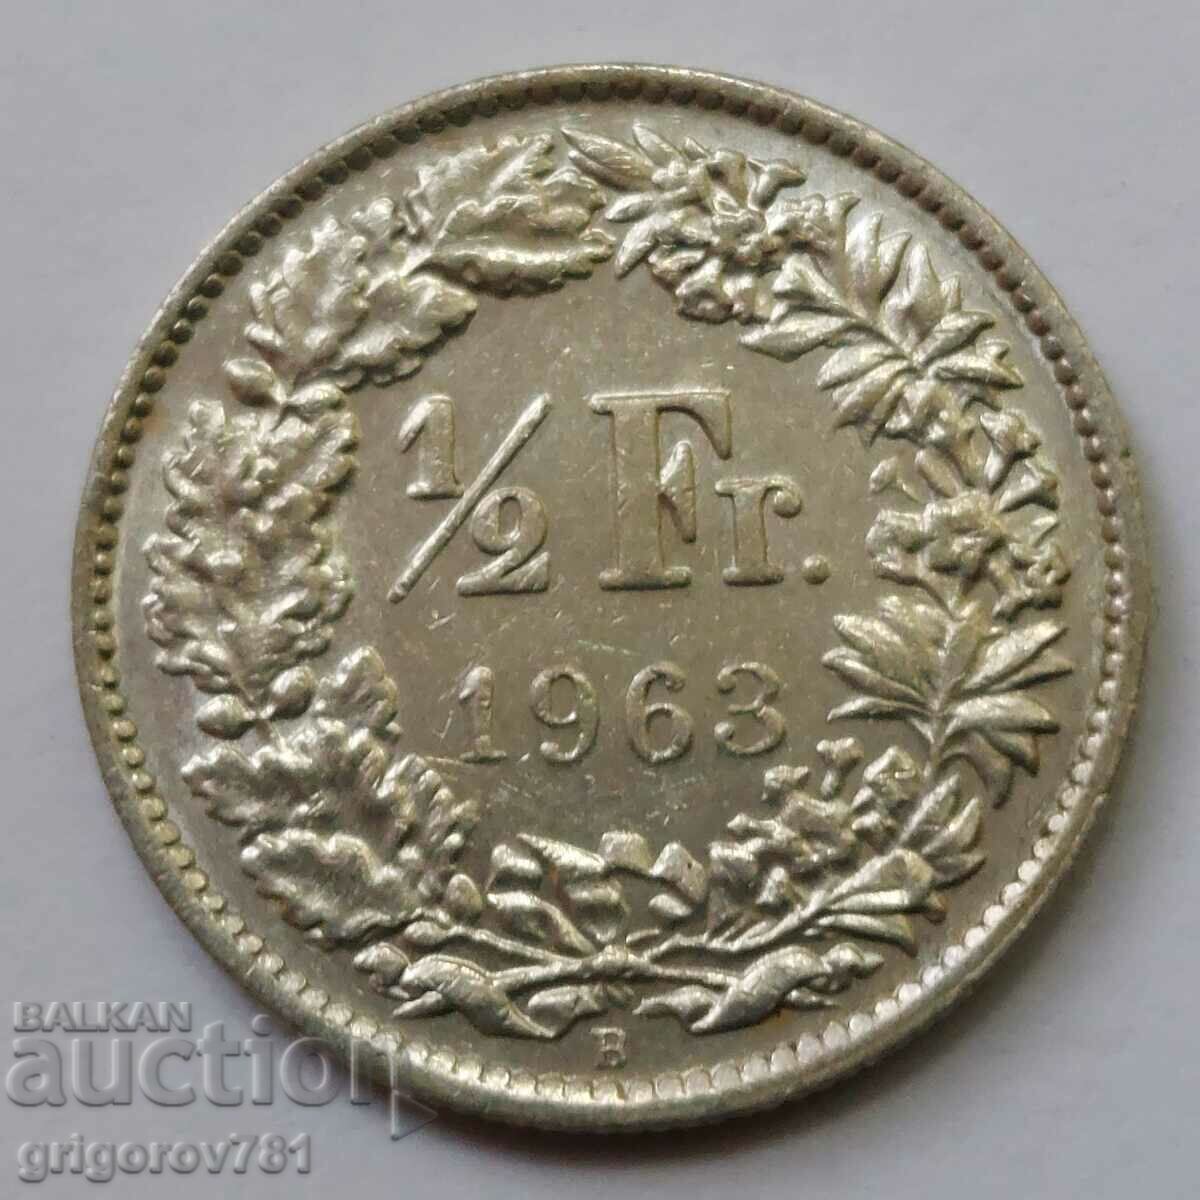 1/2 франк сребро Швейцария 1963 B - сребърна монета #13